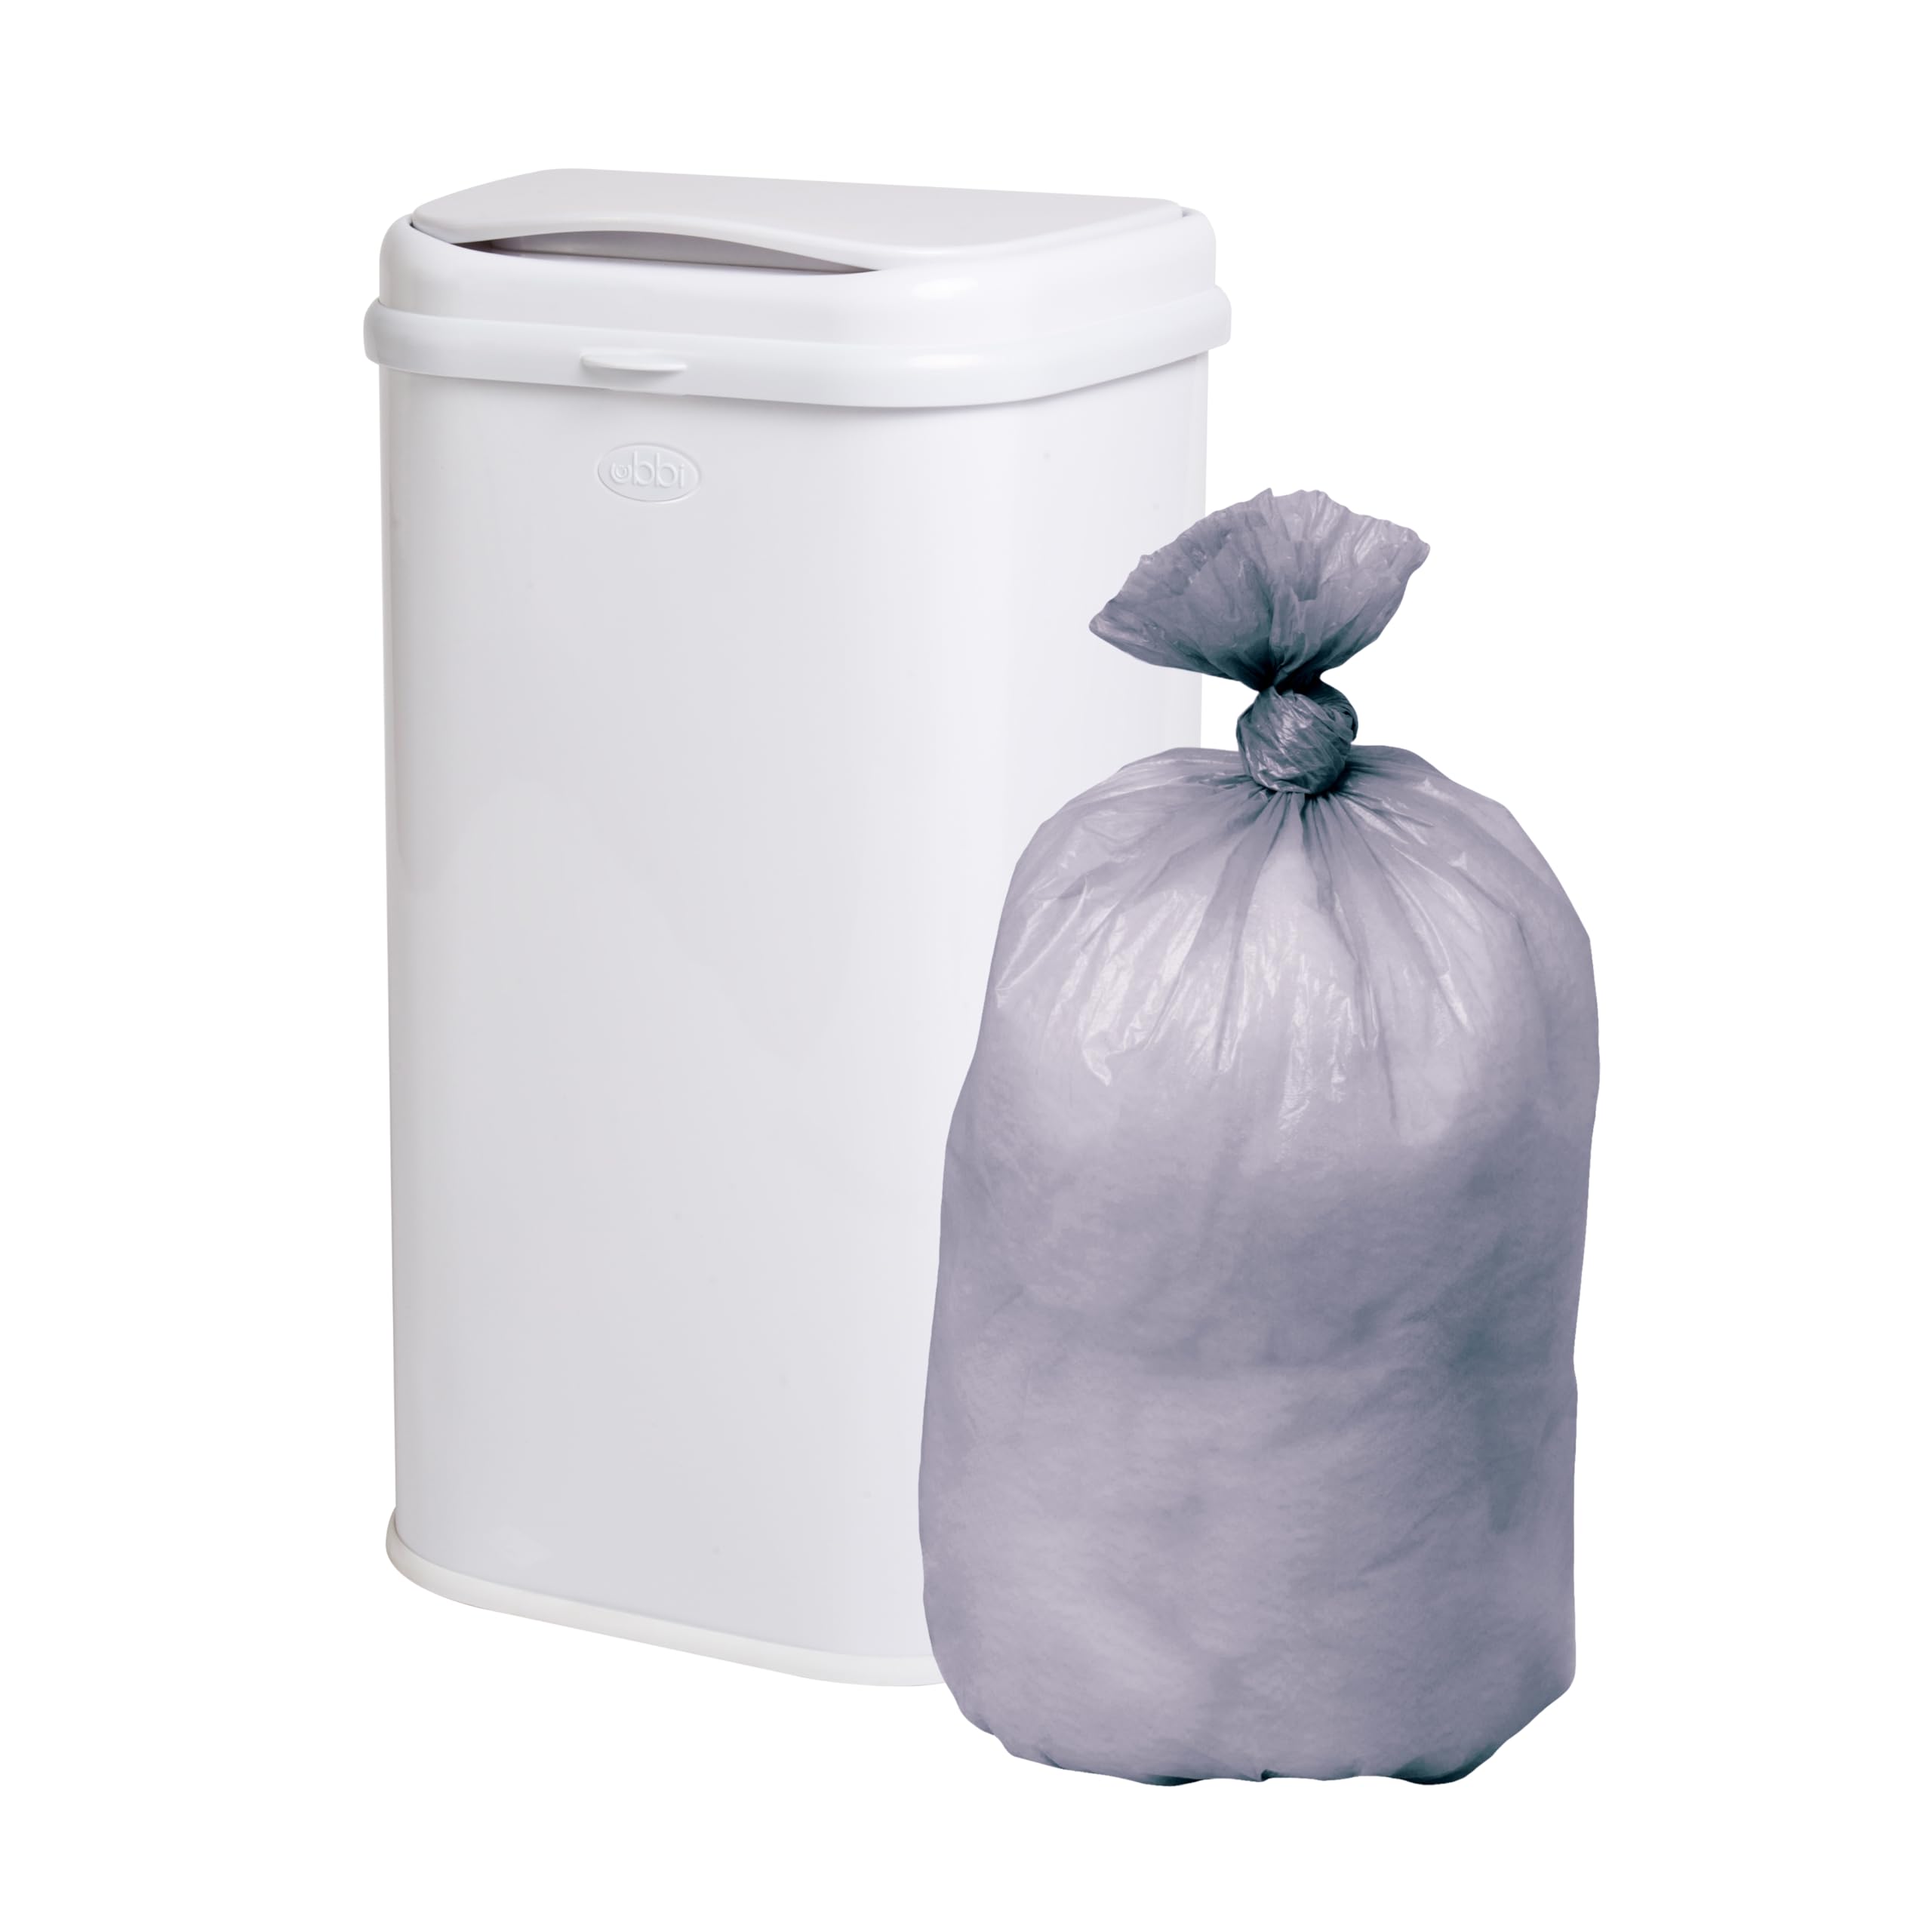 Ubbi Adult Diaper Pail Plastic Bags, 13-Gallon Capacity, Unscented, 75 Count